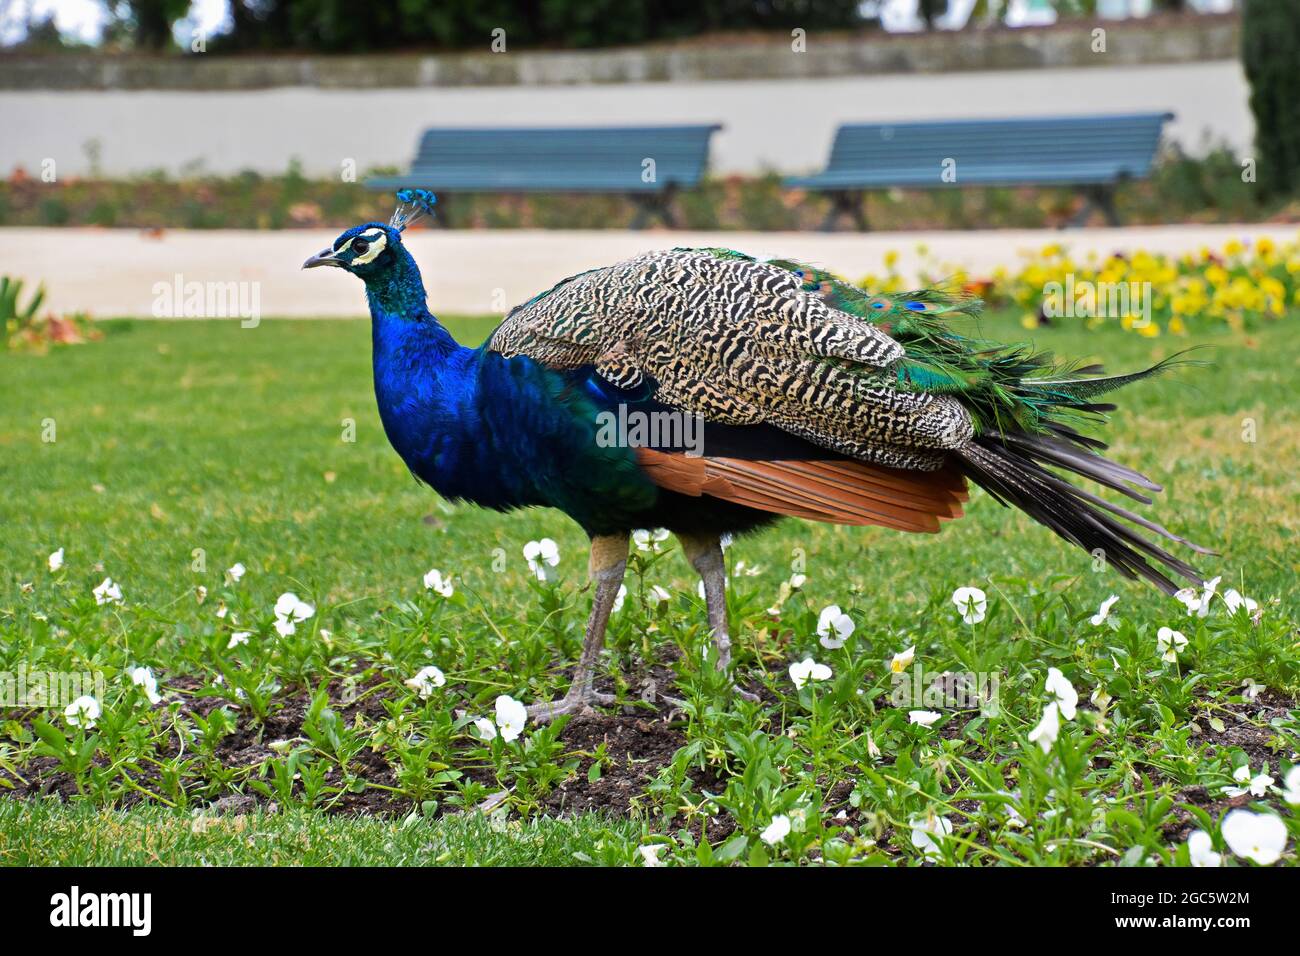 Peacock in the park in Porto, Portugal Stock Photo